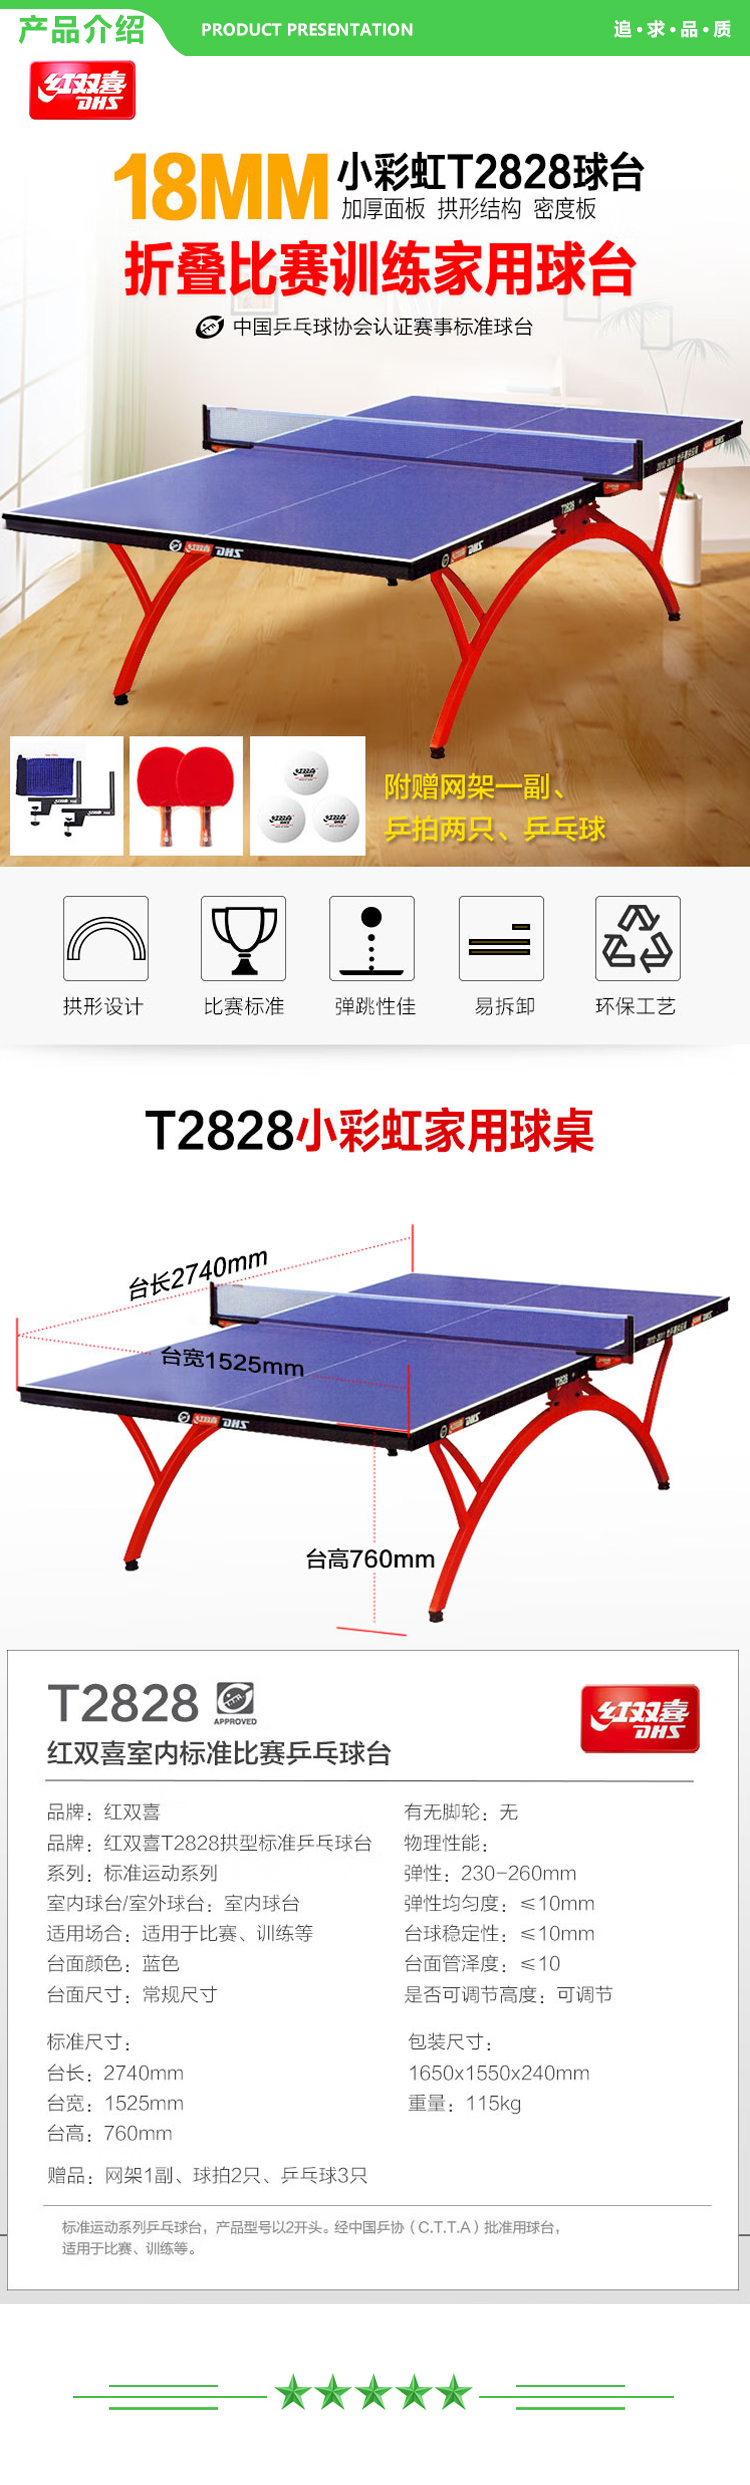 红双喜 DHS T2828 专业乒乓球桌家用训练健身折叠式球台(附带网架、乒拍、乒球) .jpg